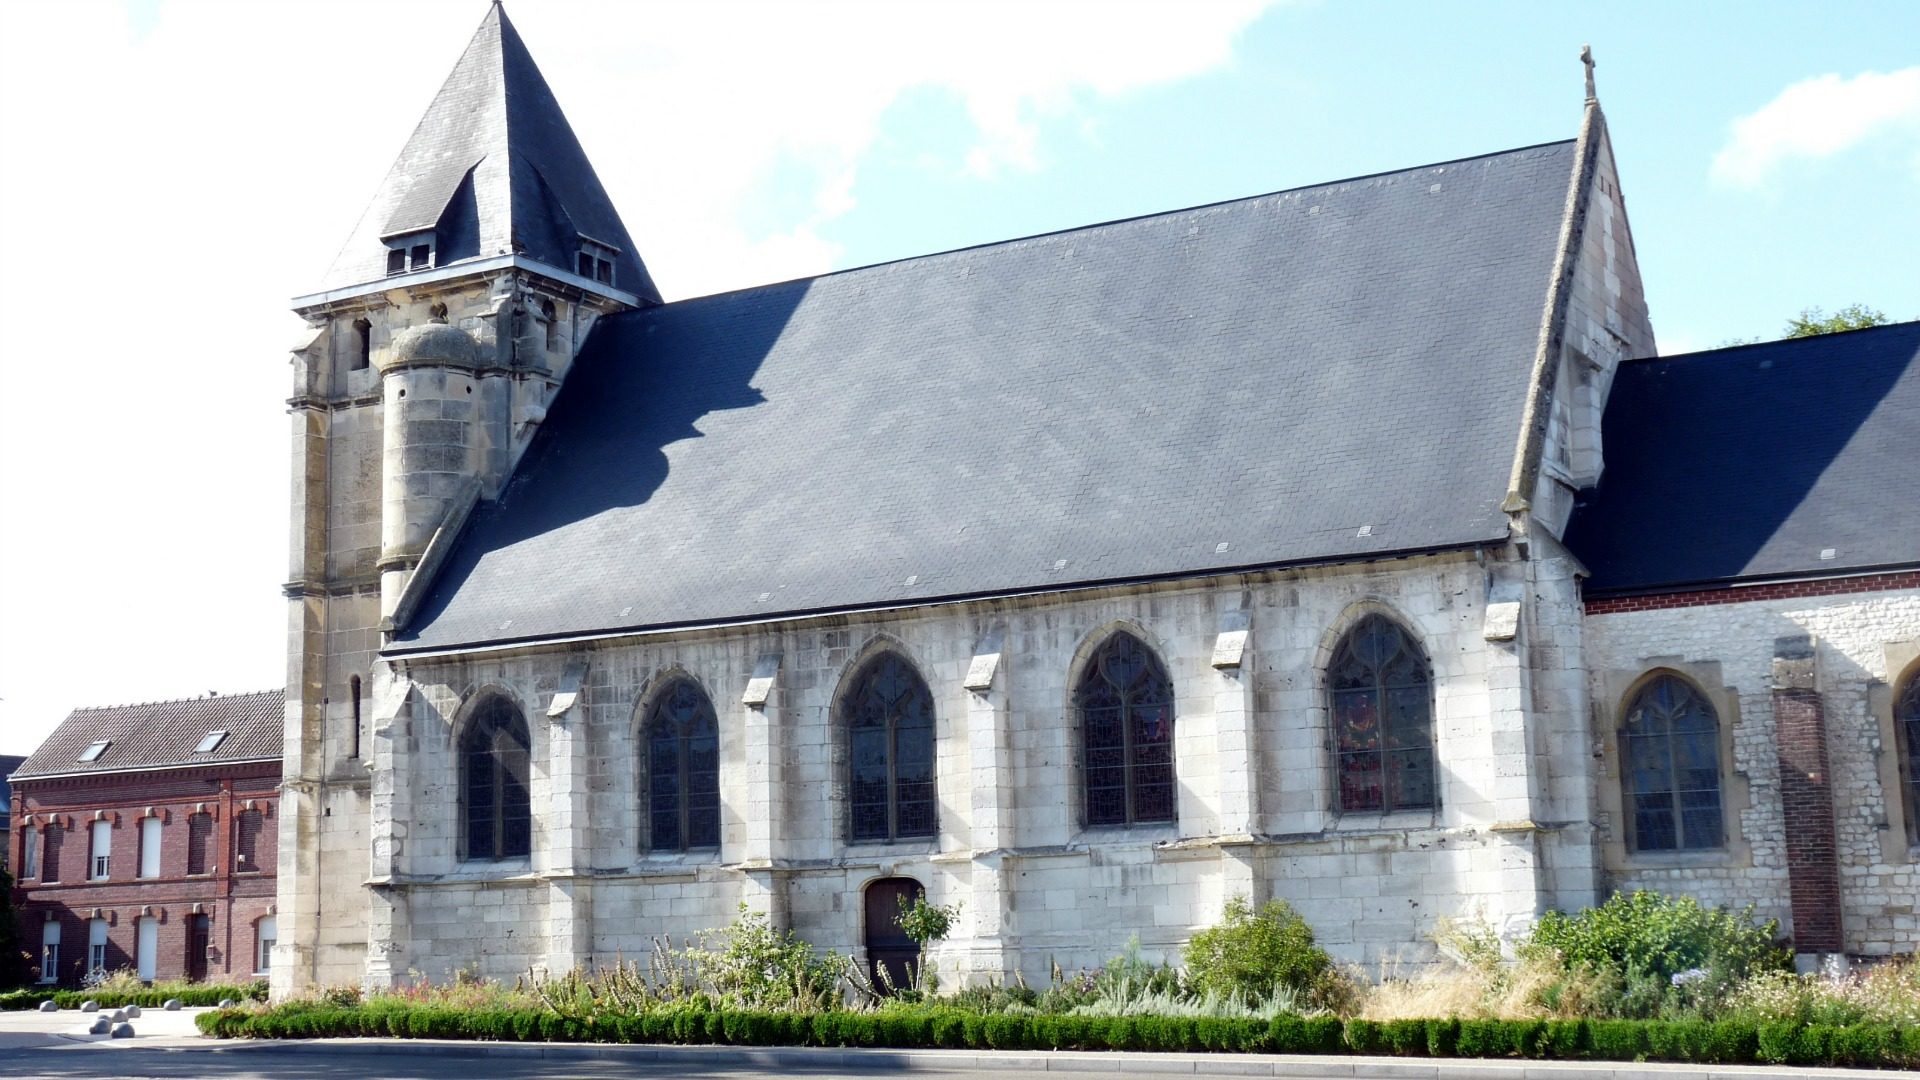 Eglise de Saint-Etienne du Rouvray, près de Rouen. Deux djihadistes ont assassiné le Père Jacques Hamel en pleine messe le 26 juillet 2016. (Photo: DR)